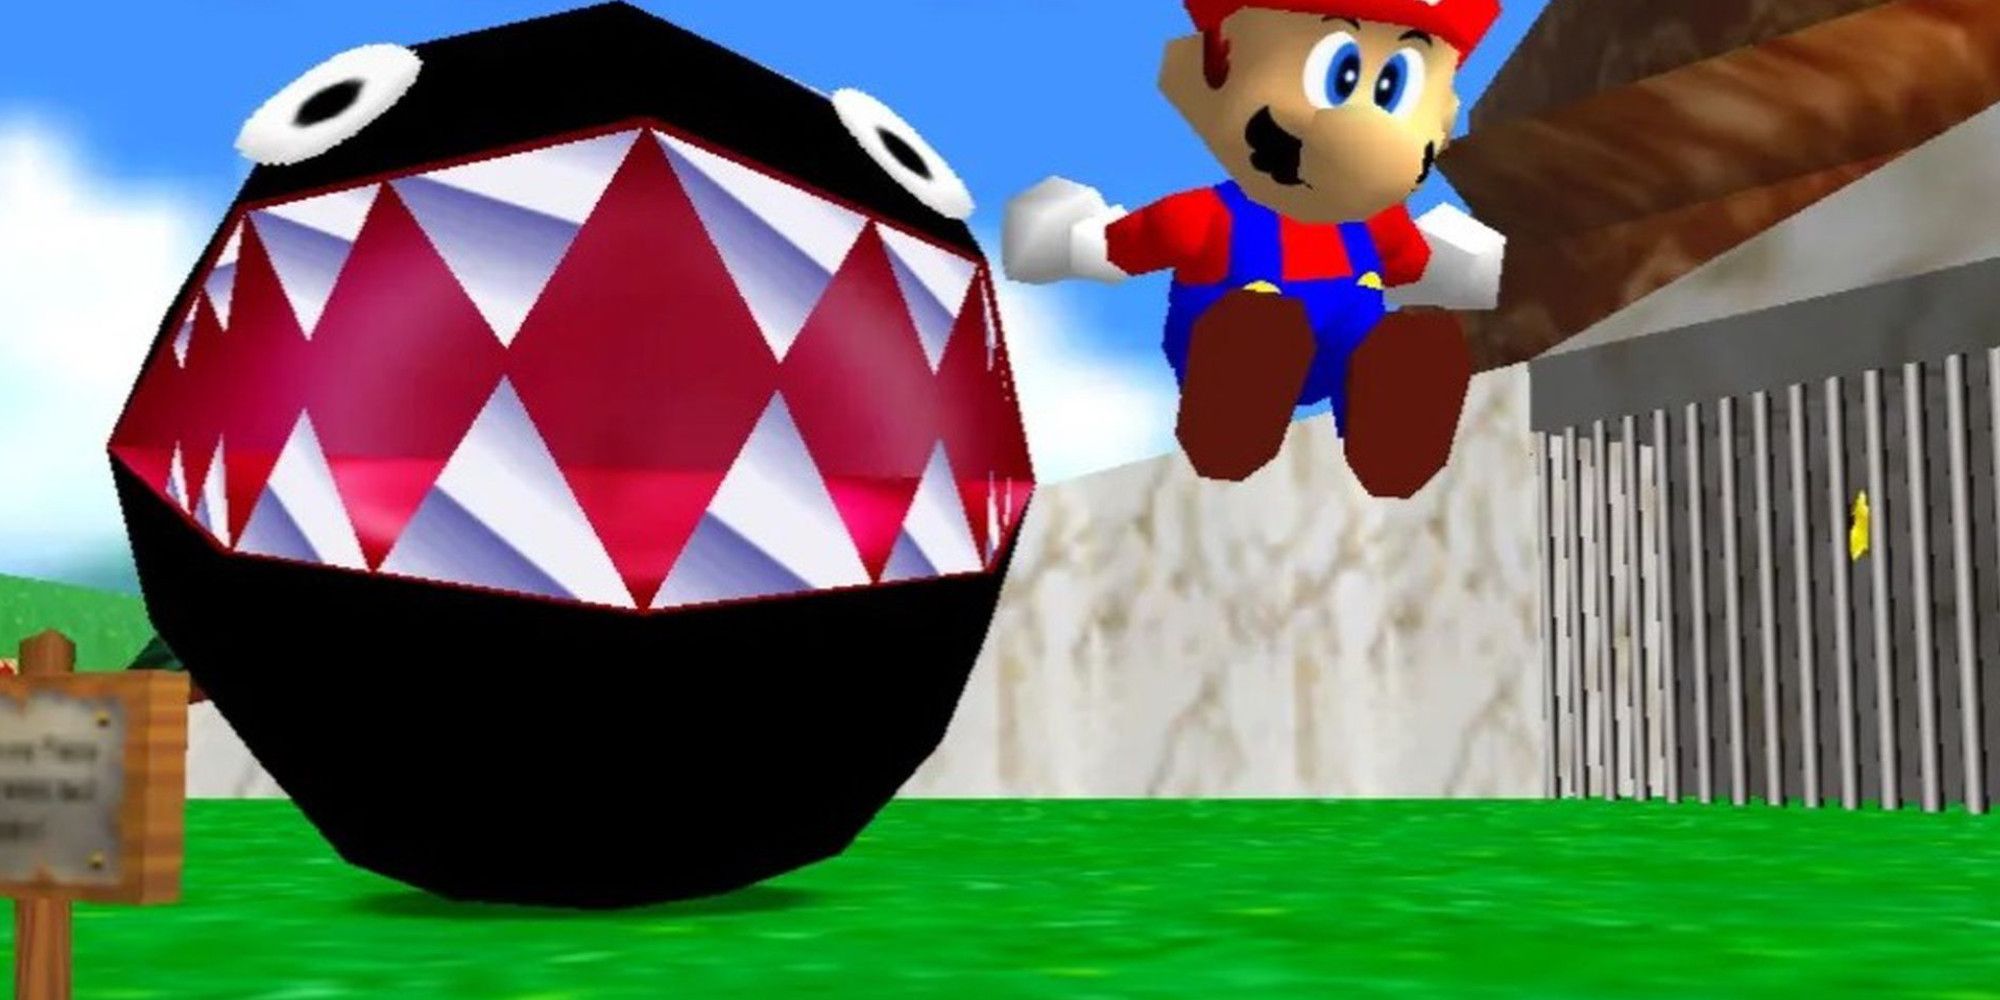 Mario avoiding the chain chomp in Super Mario 64.